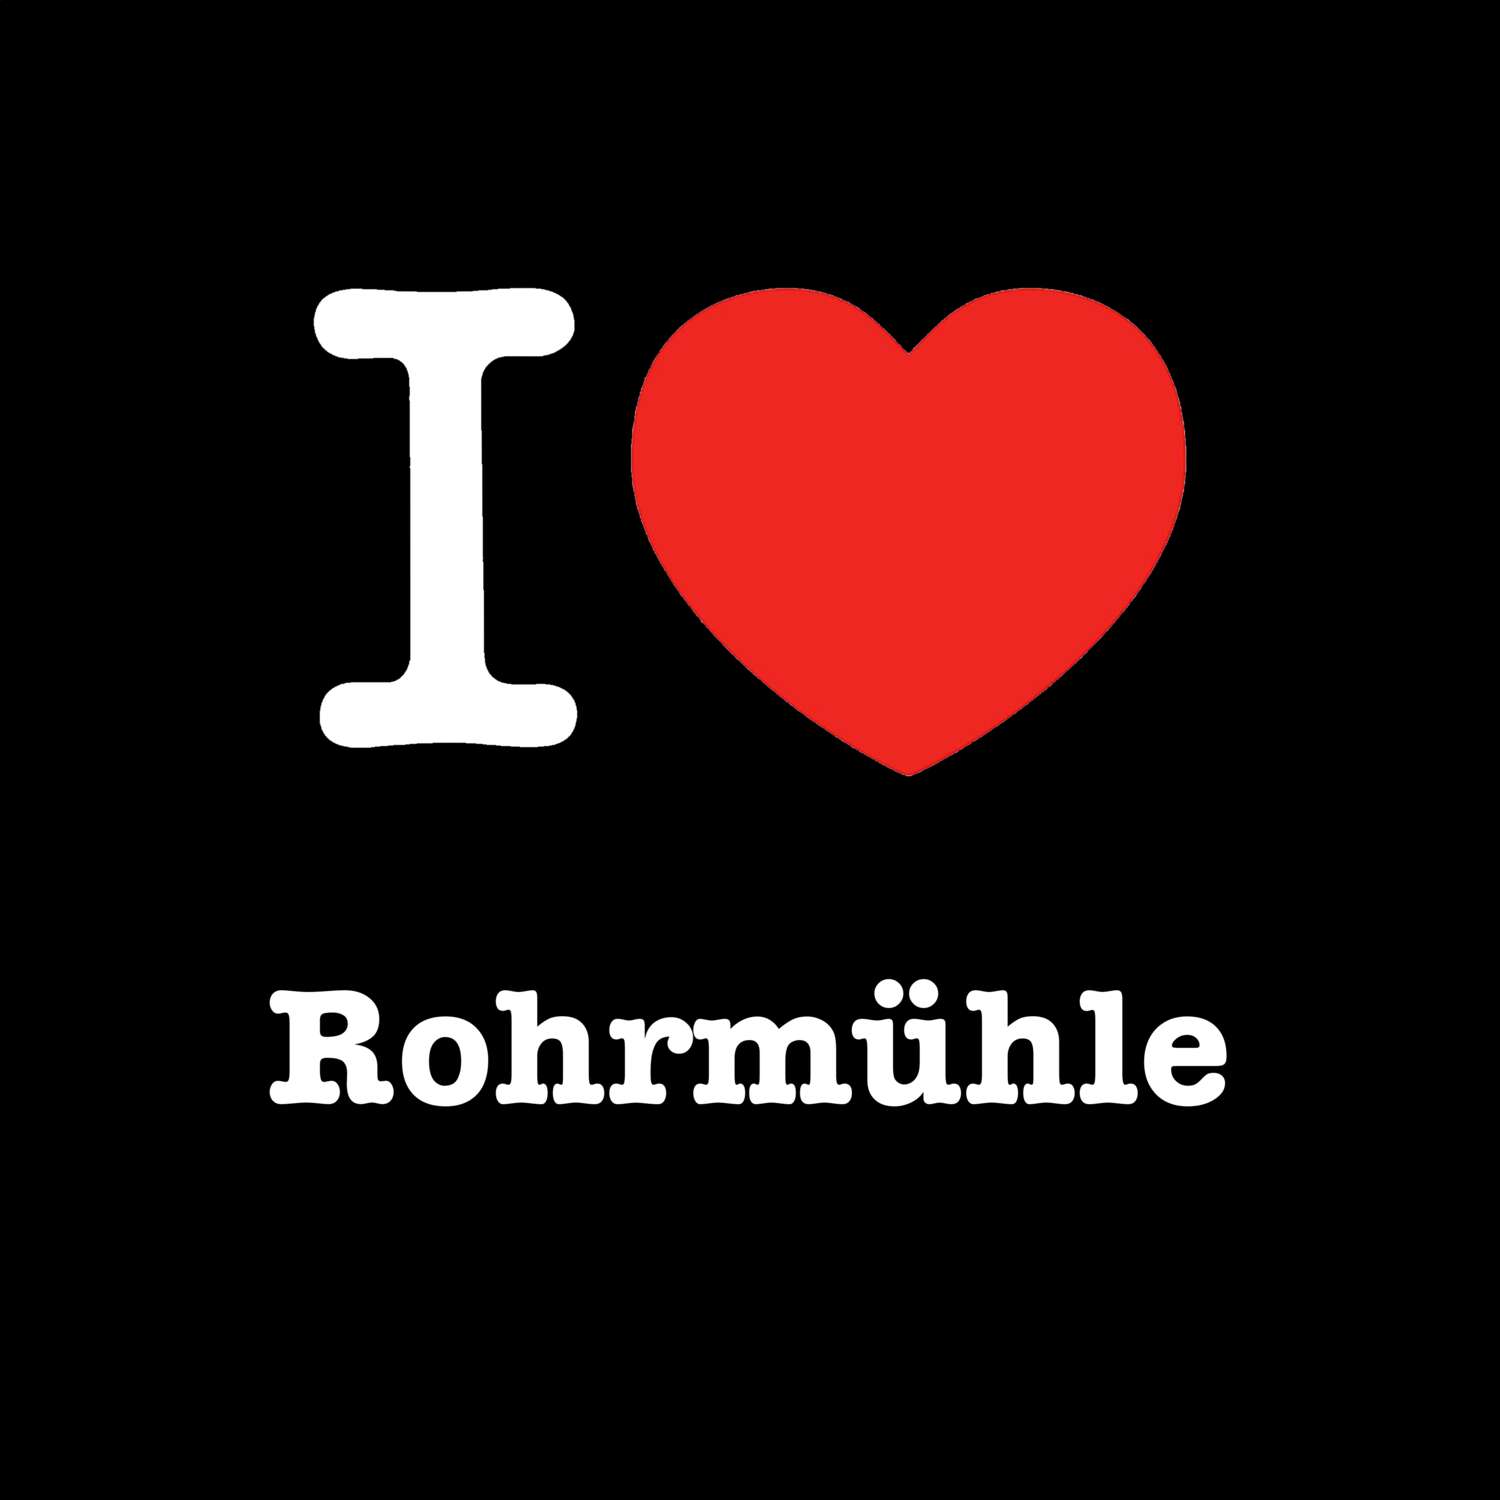 Rohrmühle T-Shirt »I love«